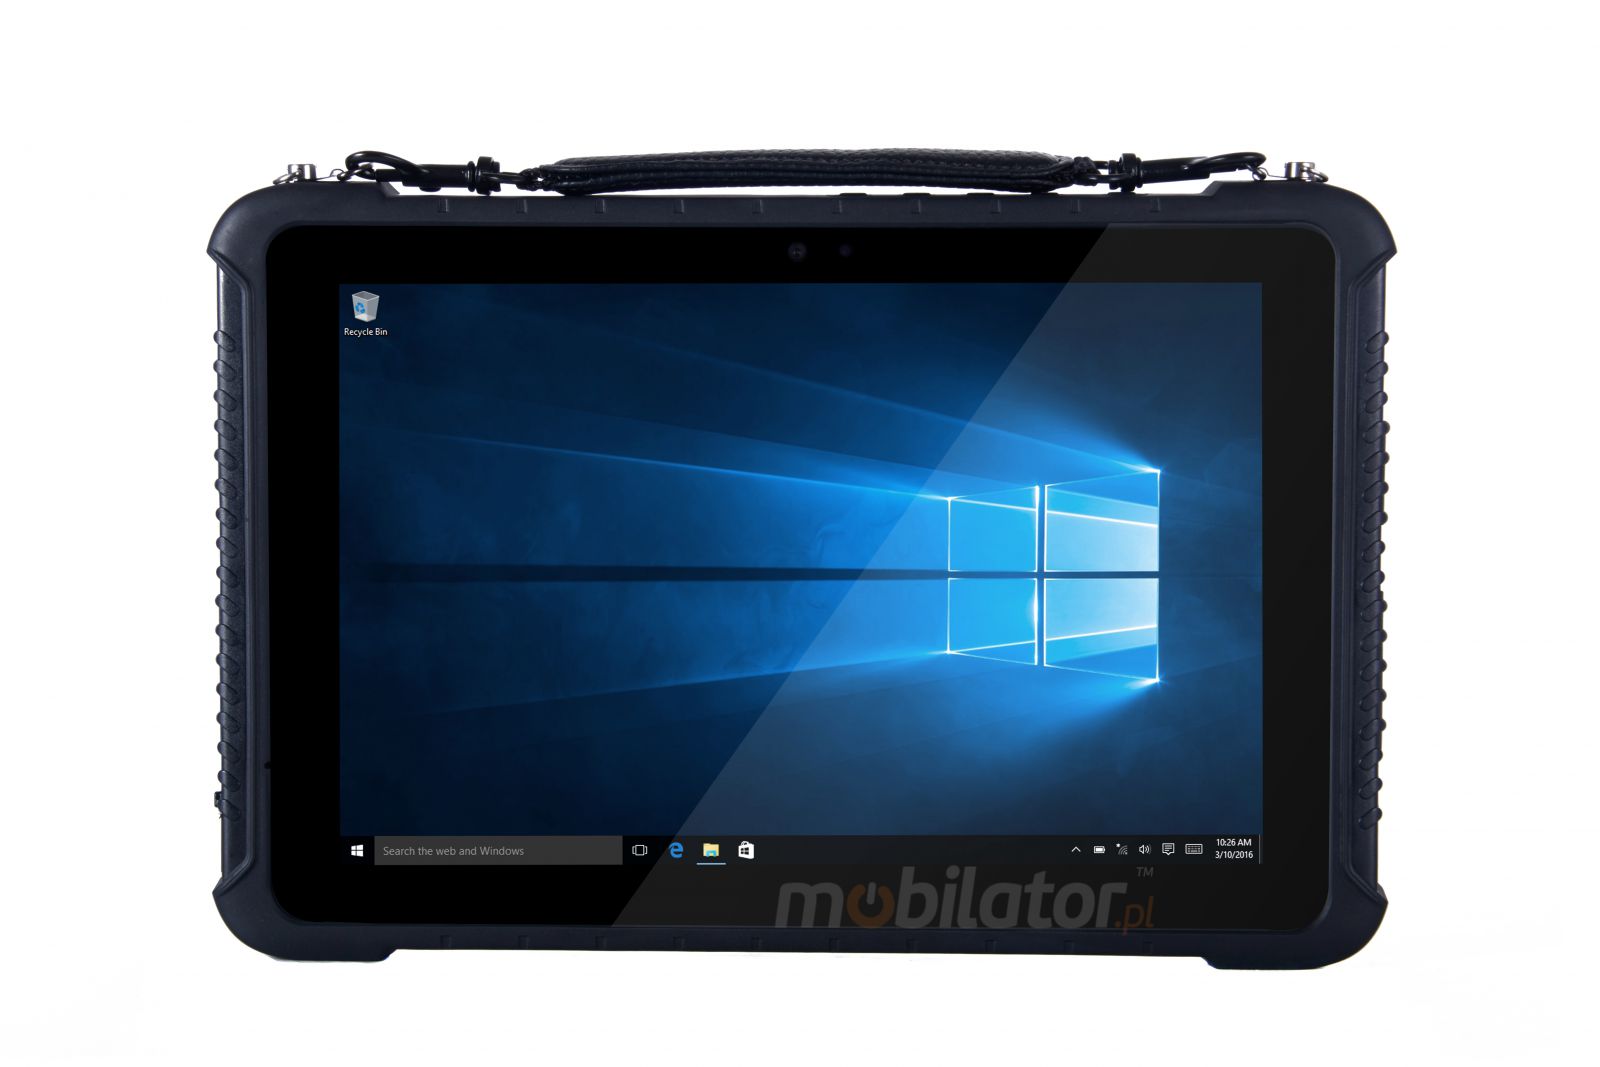 Emdoor I16K v.11 - Odporny na upadki dziesiciocalowy tablet z Windows 10 Home, BT 4.2, 4G, 4GB RAM pamici, 128GB SSD, czytnikiem kodw 2D Honeywell 